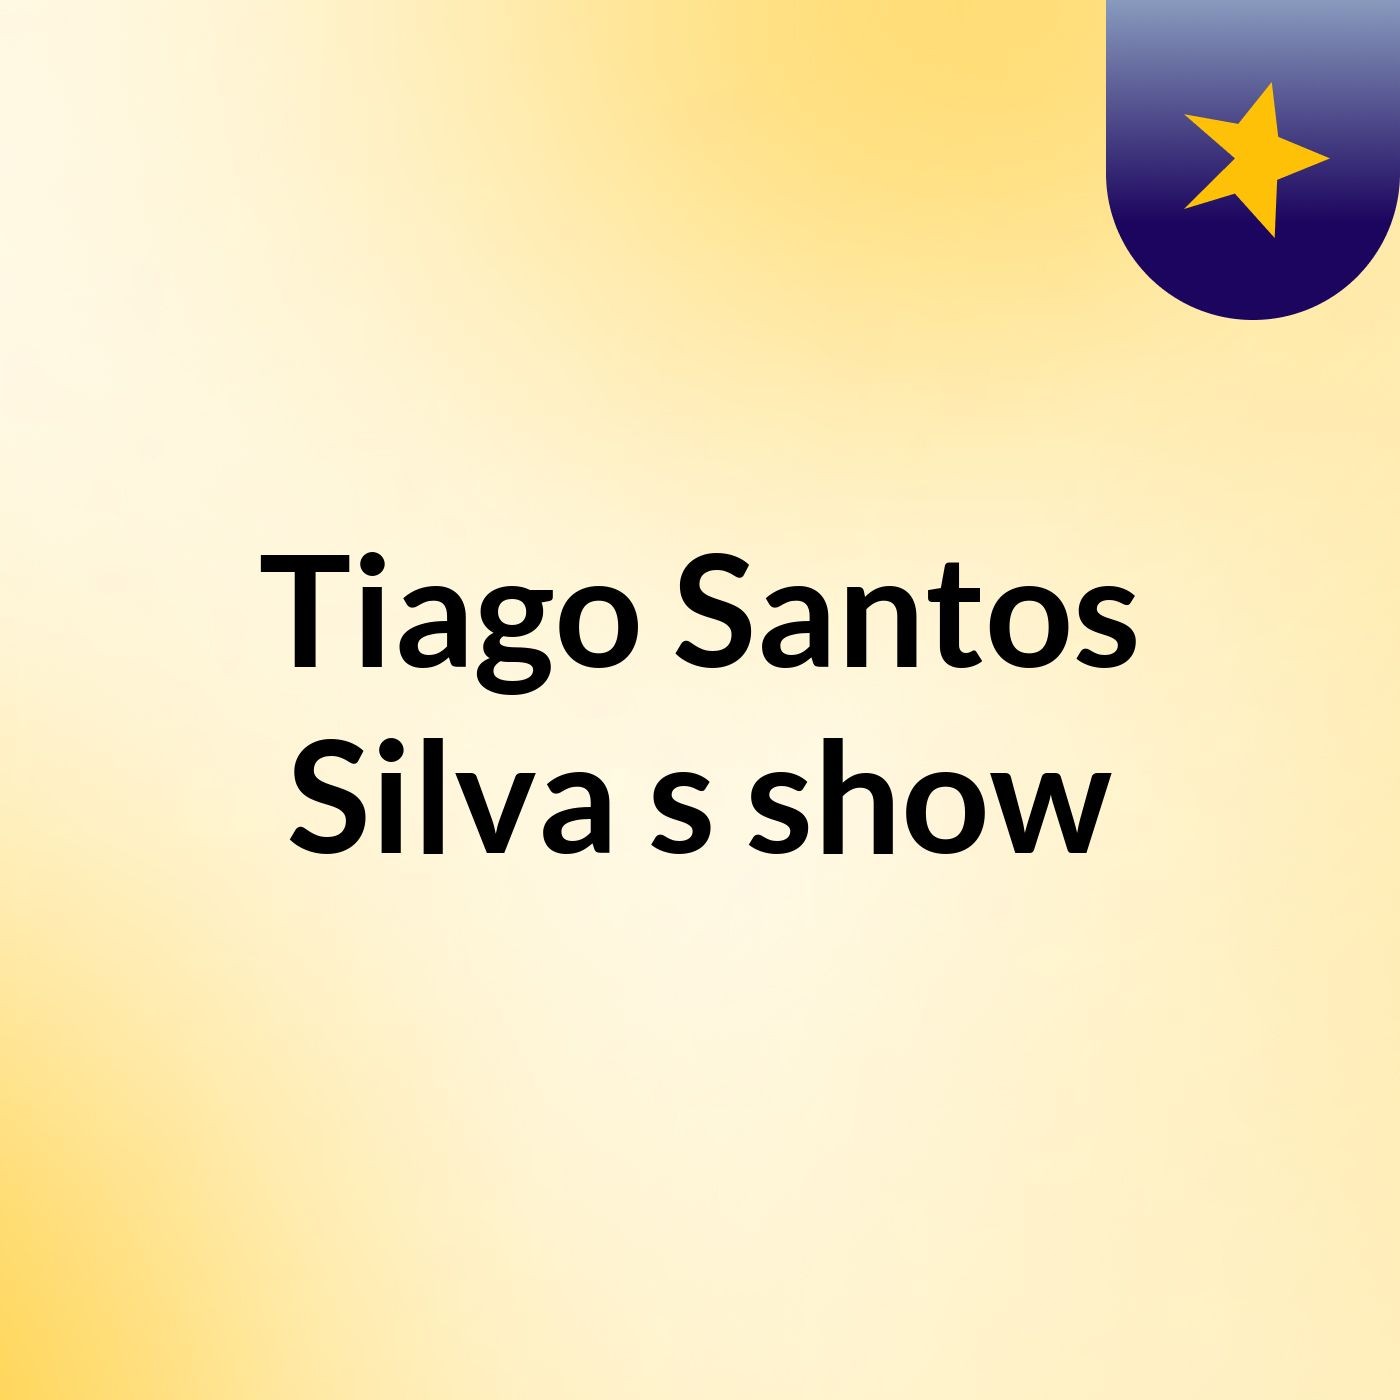 Tiago Santos Silva's show